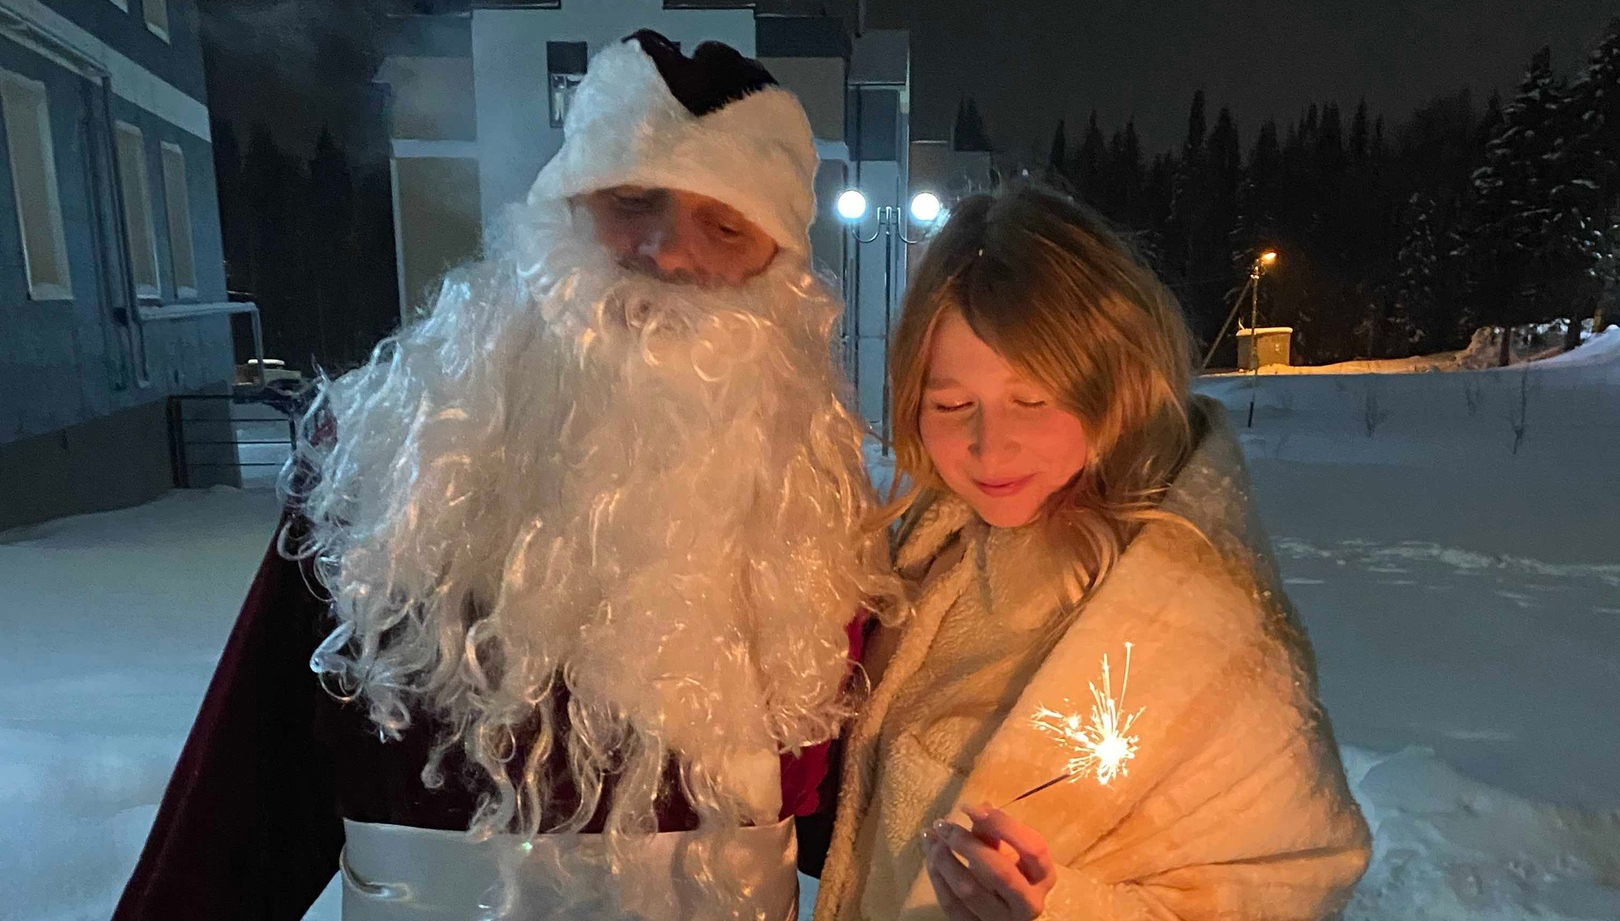 "После первой встречи Деда Мороза обходила стороной": чепчане о новогоднем волшебнике